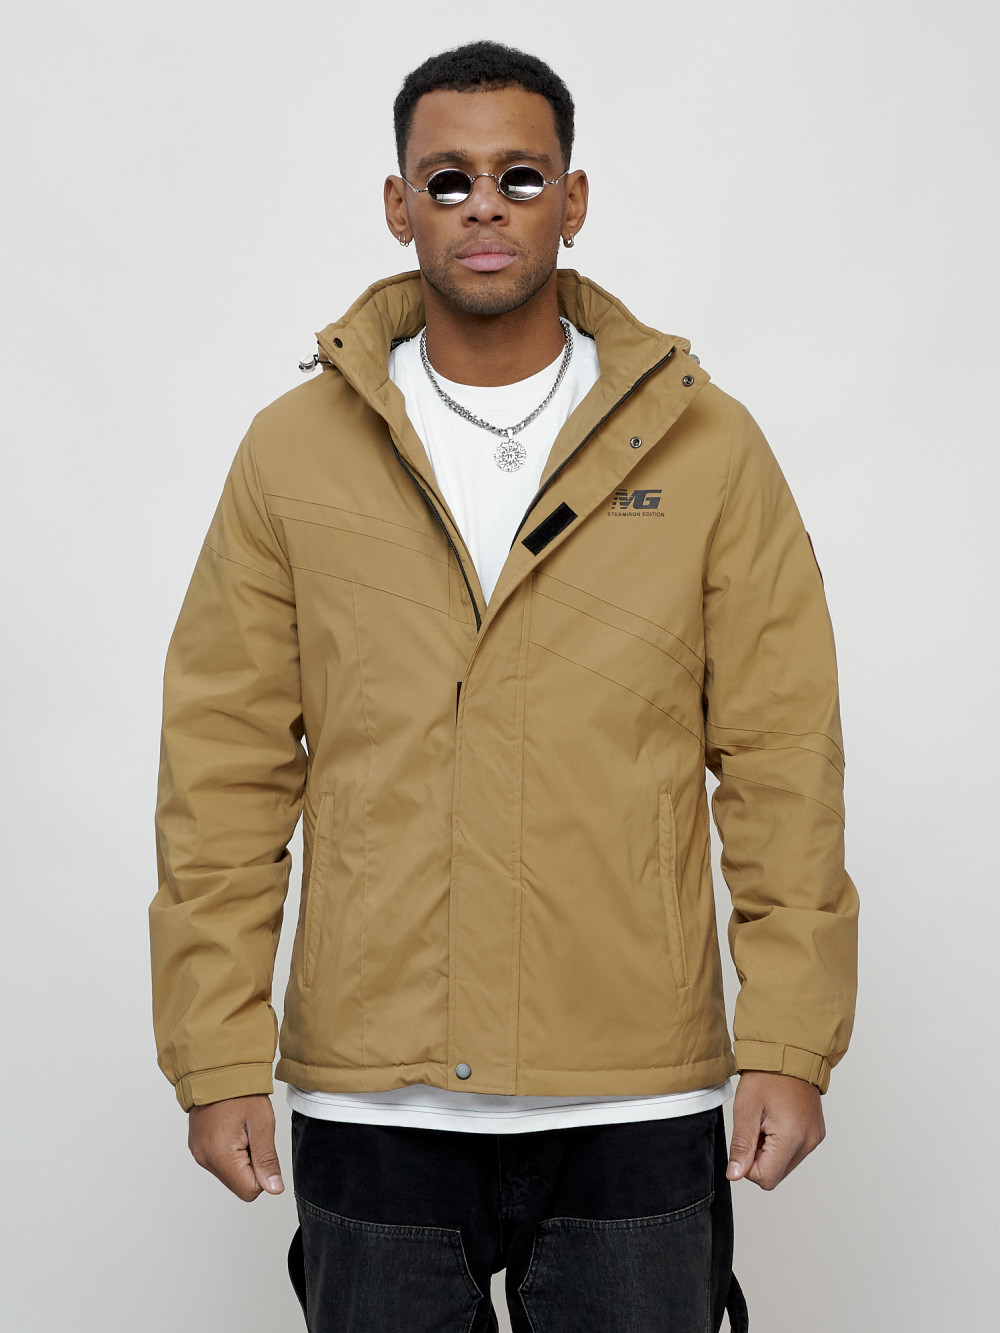 Купить оптом Куртка спортивная мужская весенняя с капюшоном бежевого цвета 88027B в Казани